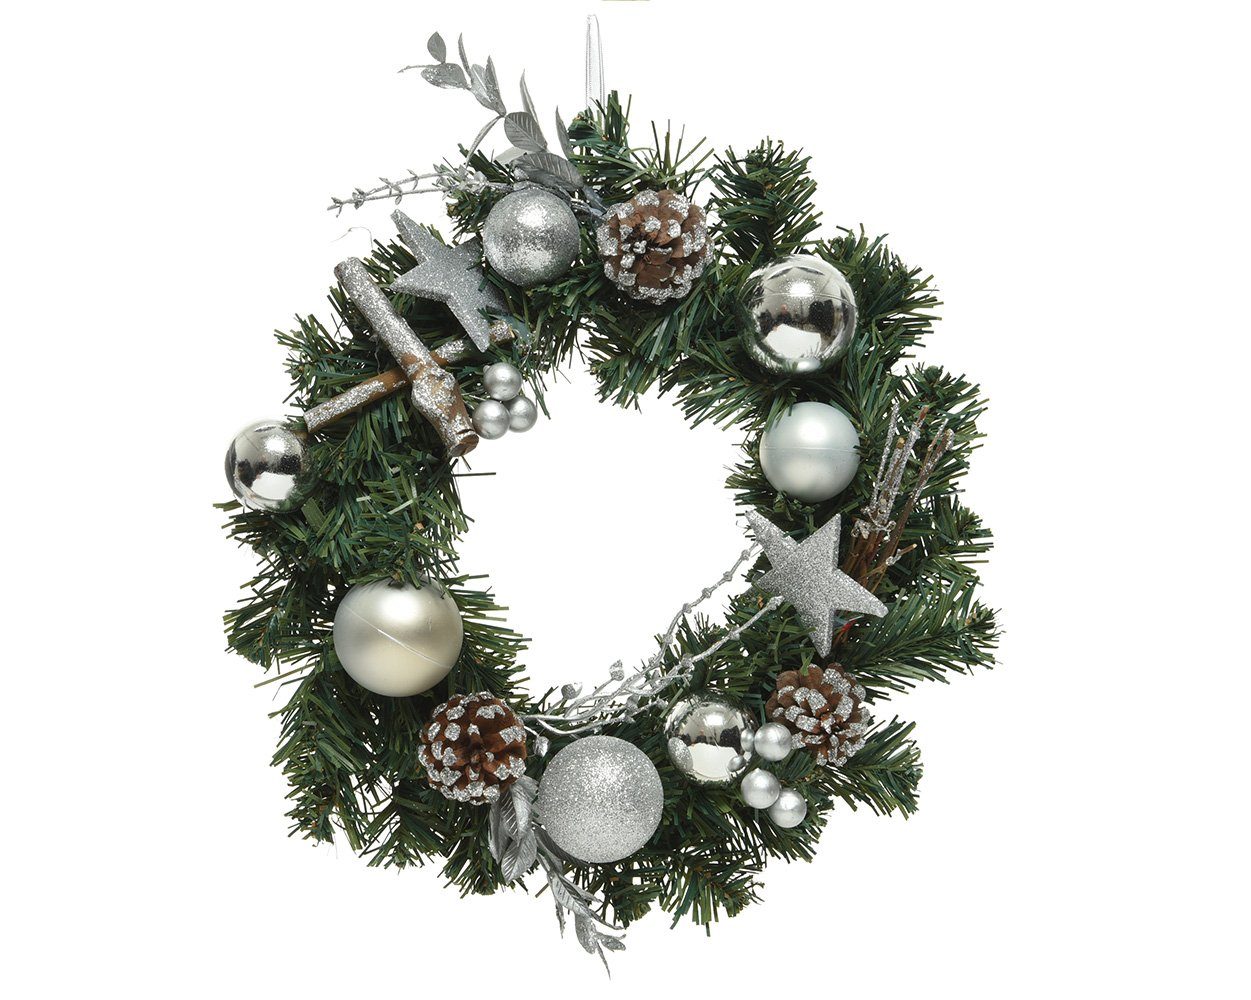 Decoris season decorations Adventskranz, Türkranz künstlich mit Weihnachtskugeln 30cm grün / silber